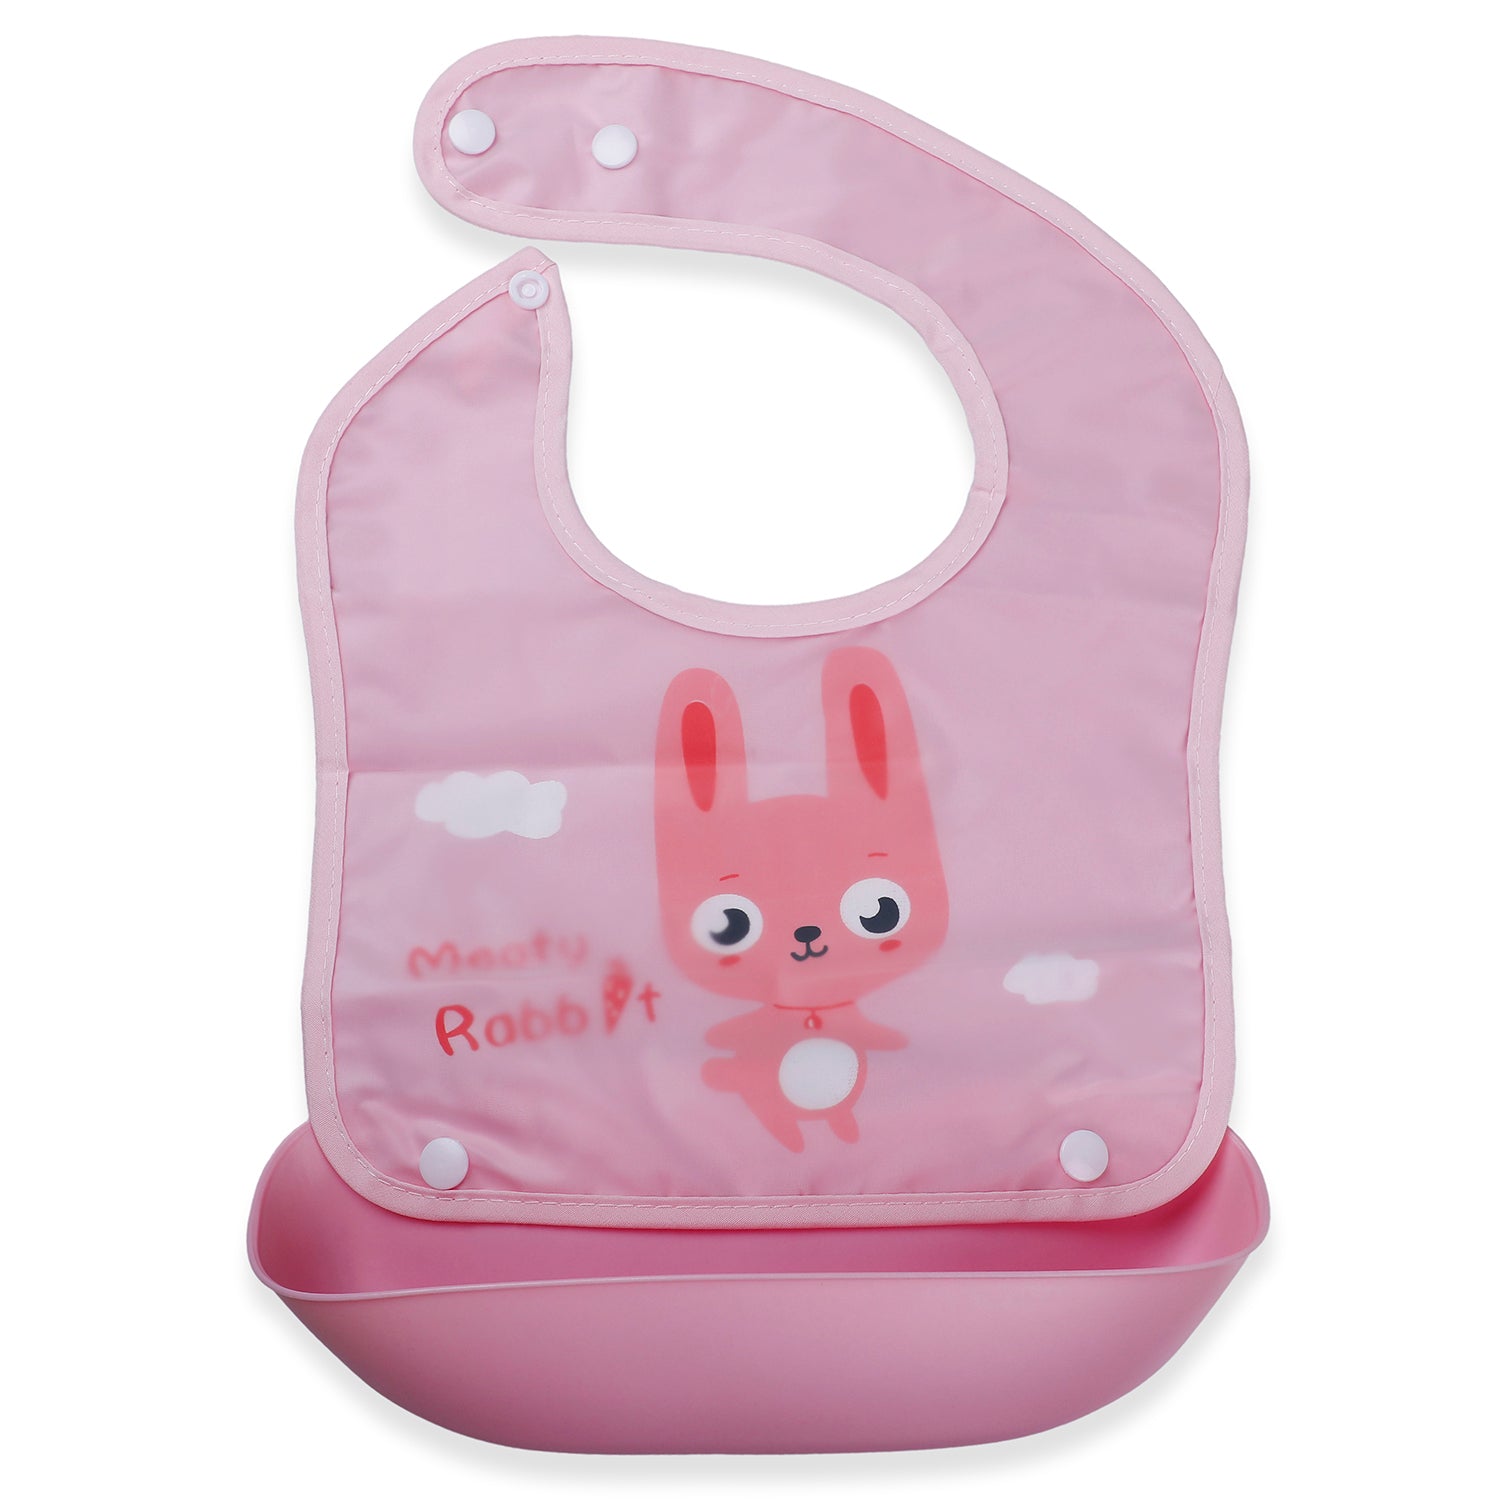 Baby Moo Meaty Rabbit Premium Waterproof Crumb Catcher Bibs - Pink